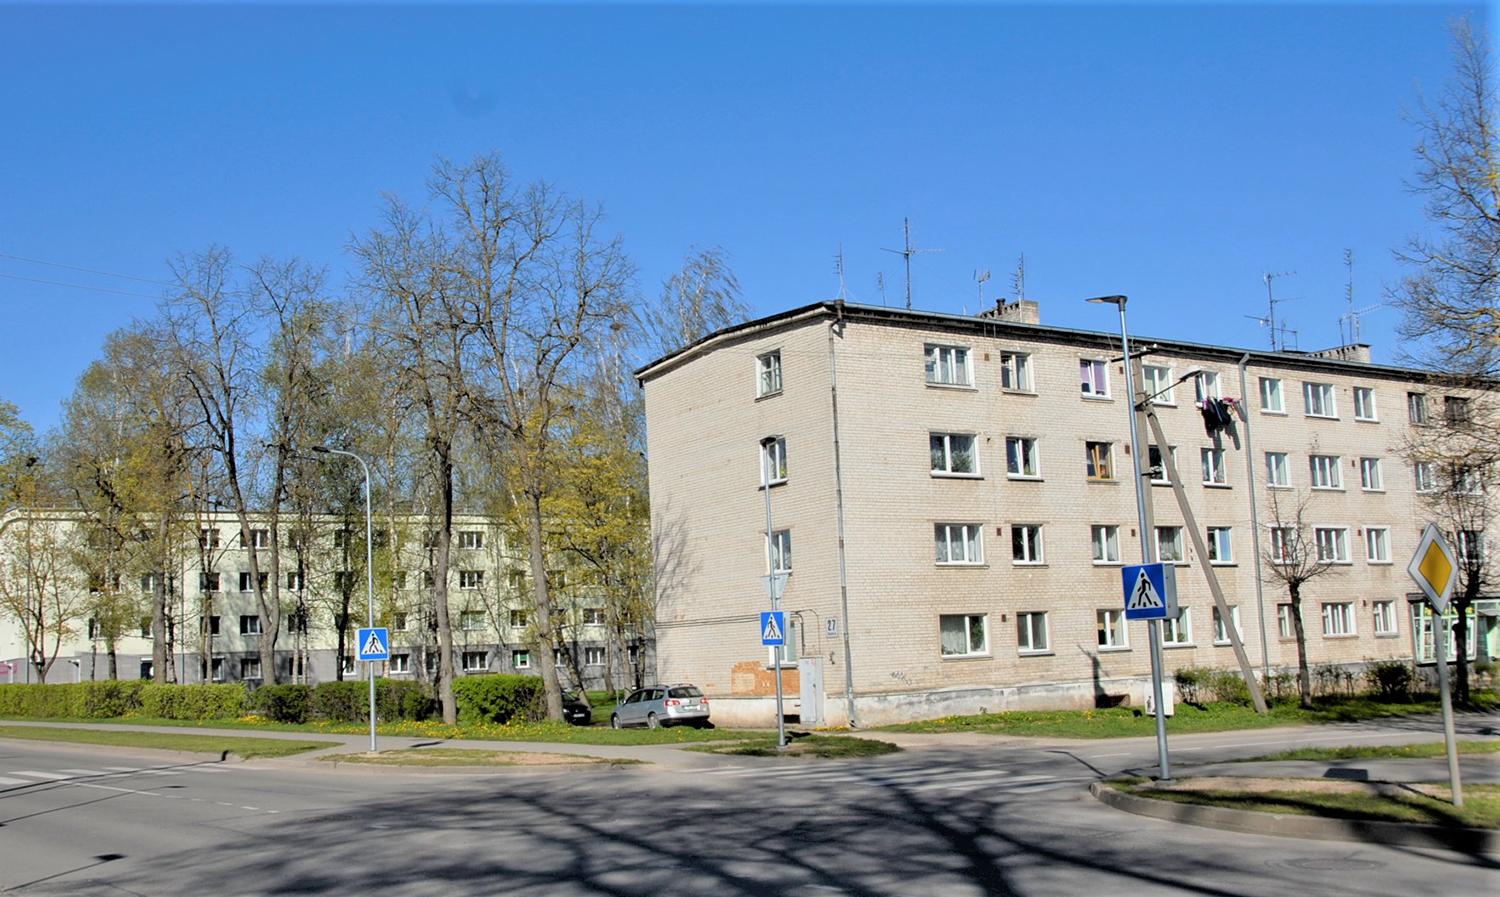 Sovietmetį menantis kvartalas taps pavyzdiniu? / Ruošiamasi kvartalinei renovacijai buvusiame kariniame miestelyje.  Gedimino Nemunaičio nuotr.